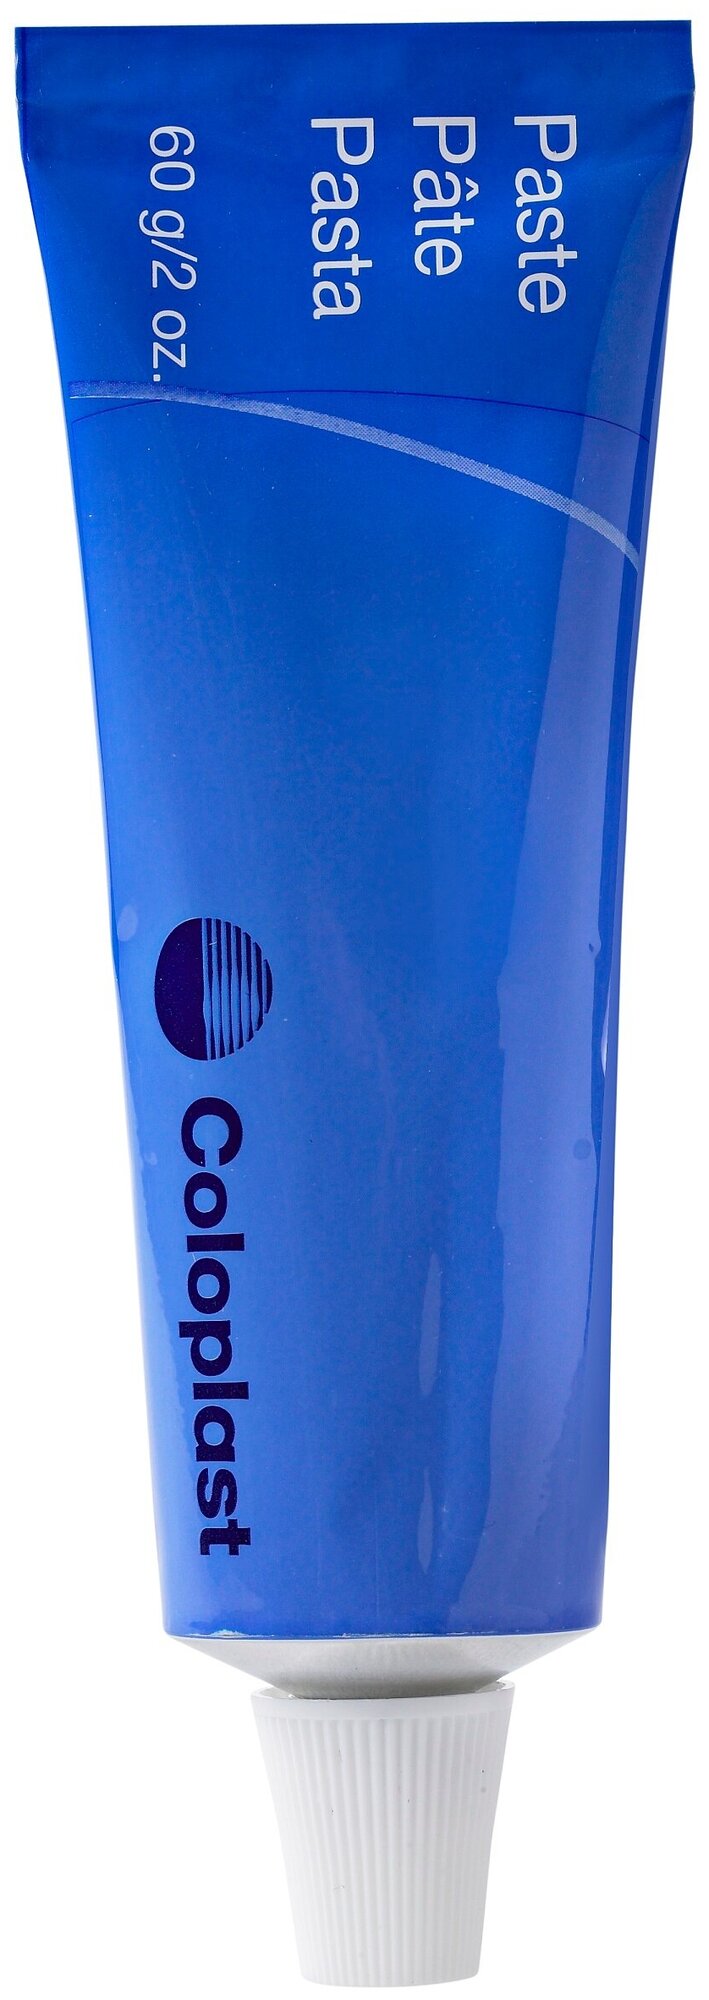 26500 Паста - герметик Coloplast для защиты кожи вокруг стомы 60г.